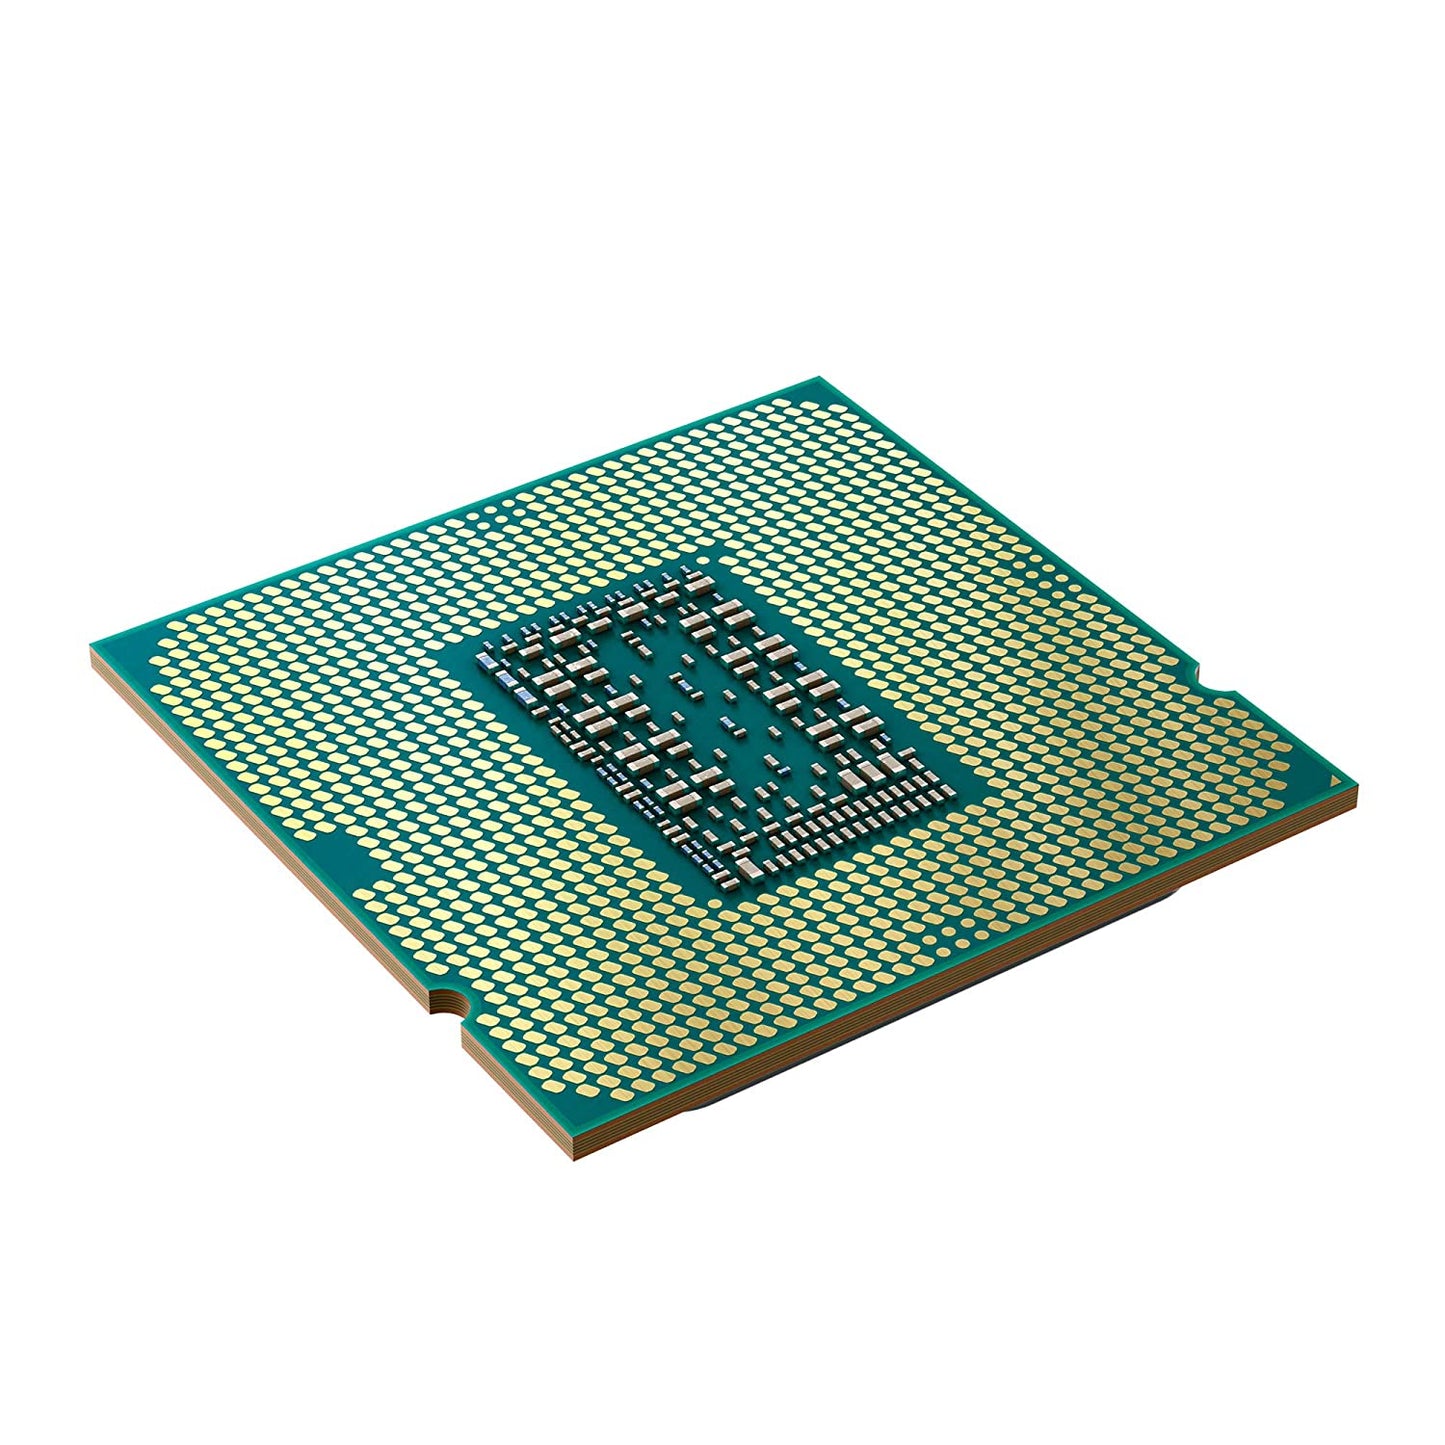 CPU-INTEL-CORE-(i7-11700K)-3.6